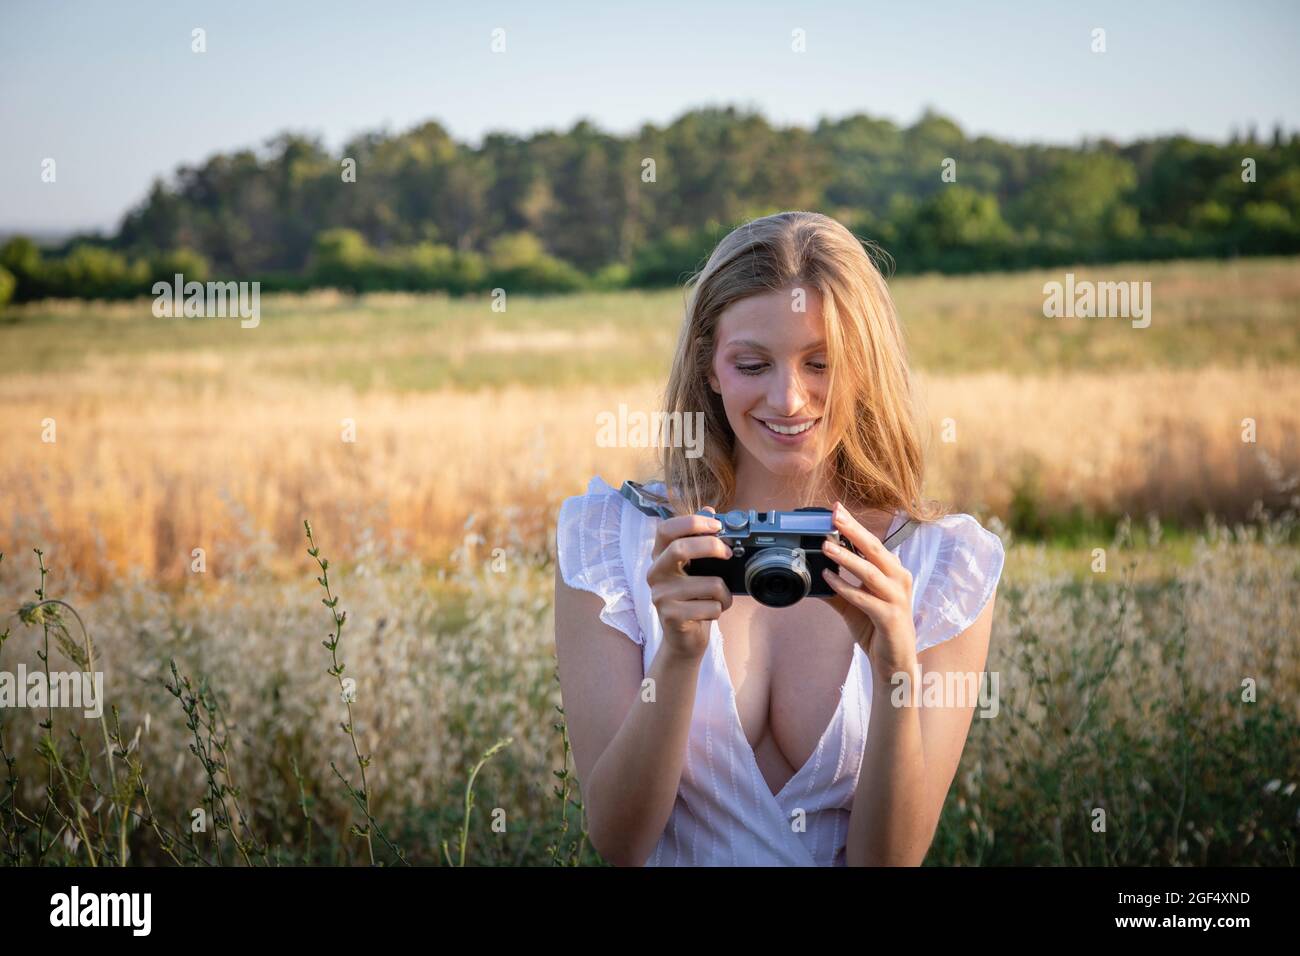 Lächelnde junge Frau, die auf die Kamera schaut, während sie im Feld steht Stockfoto